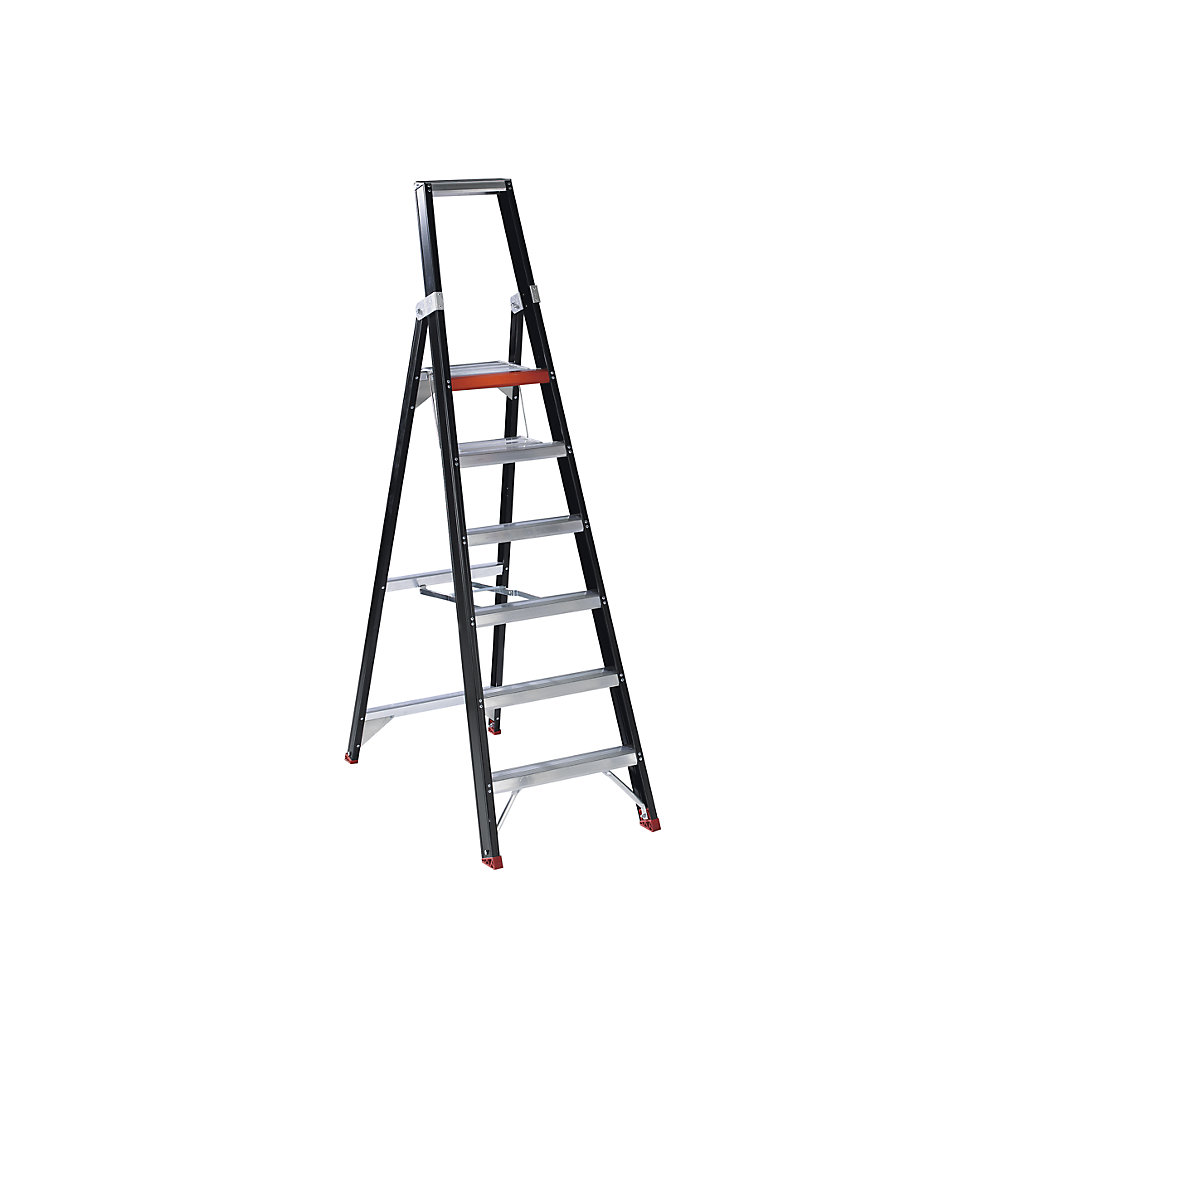 Bezpečnostný stojací rebrík – Altrex, s výstupom z jednej strany, 6 stupňov vrátane plošiny-1